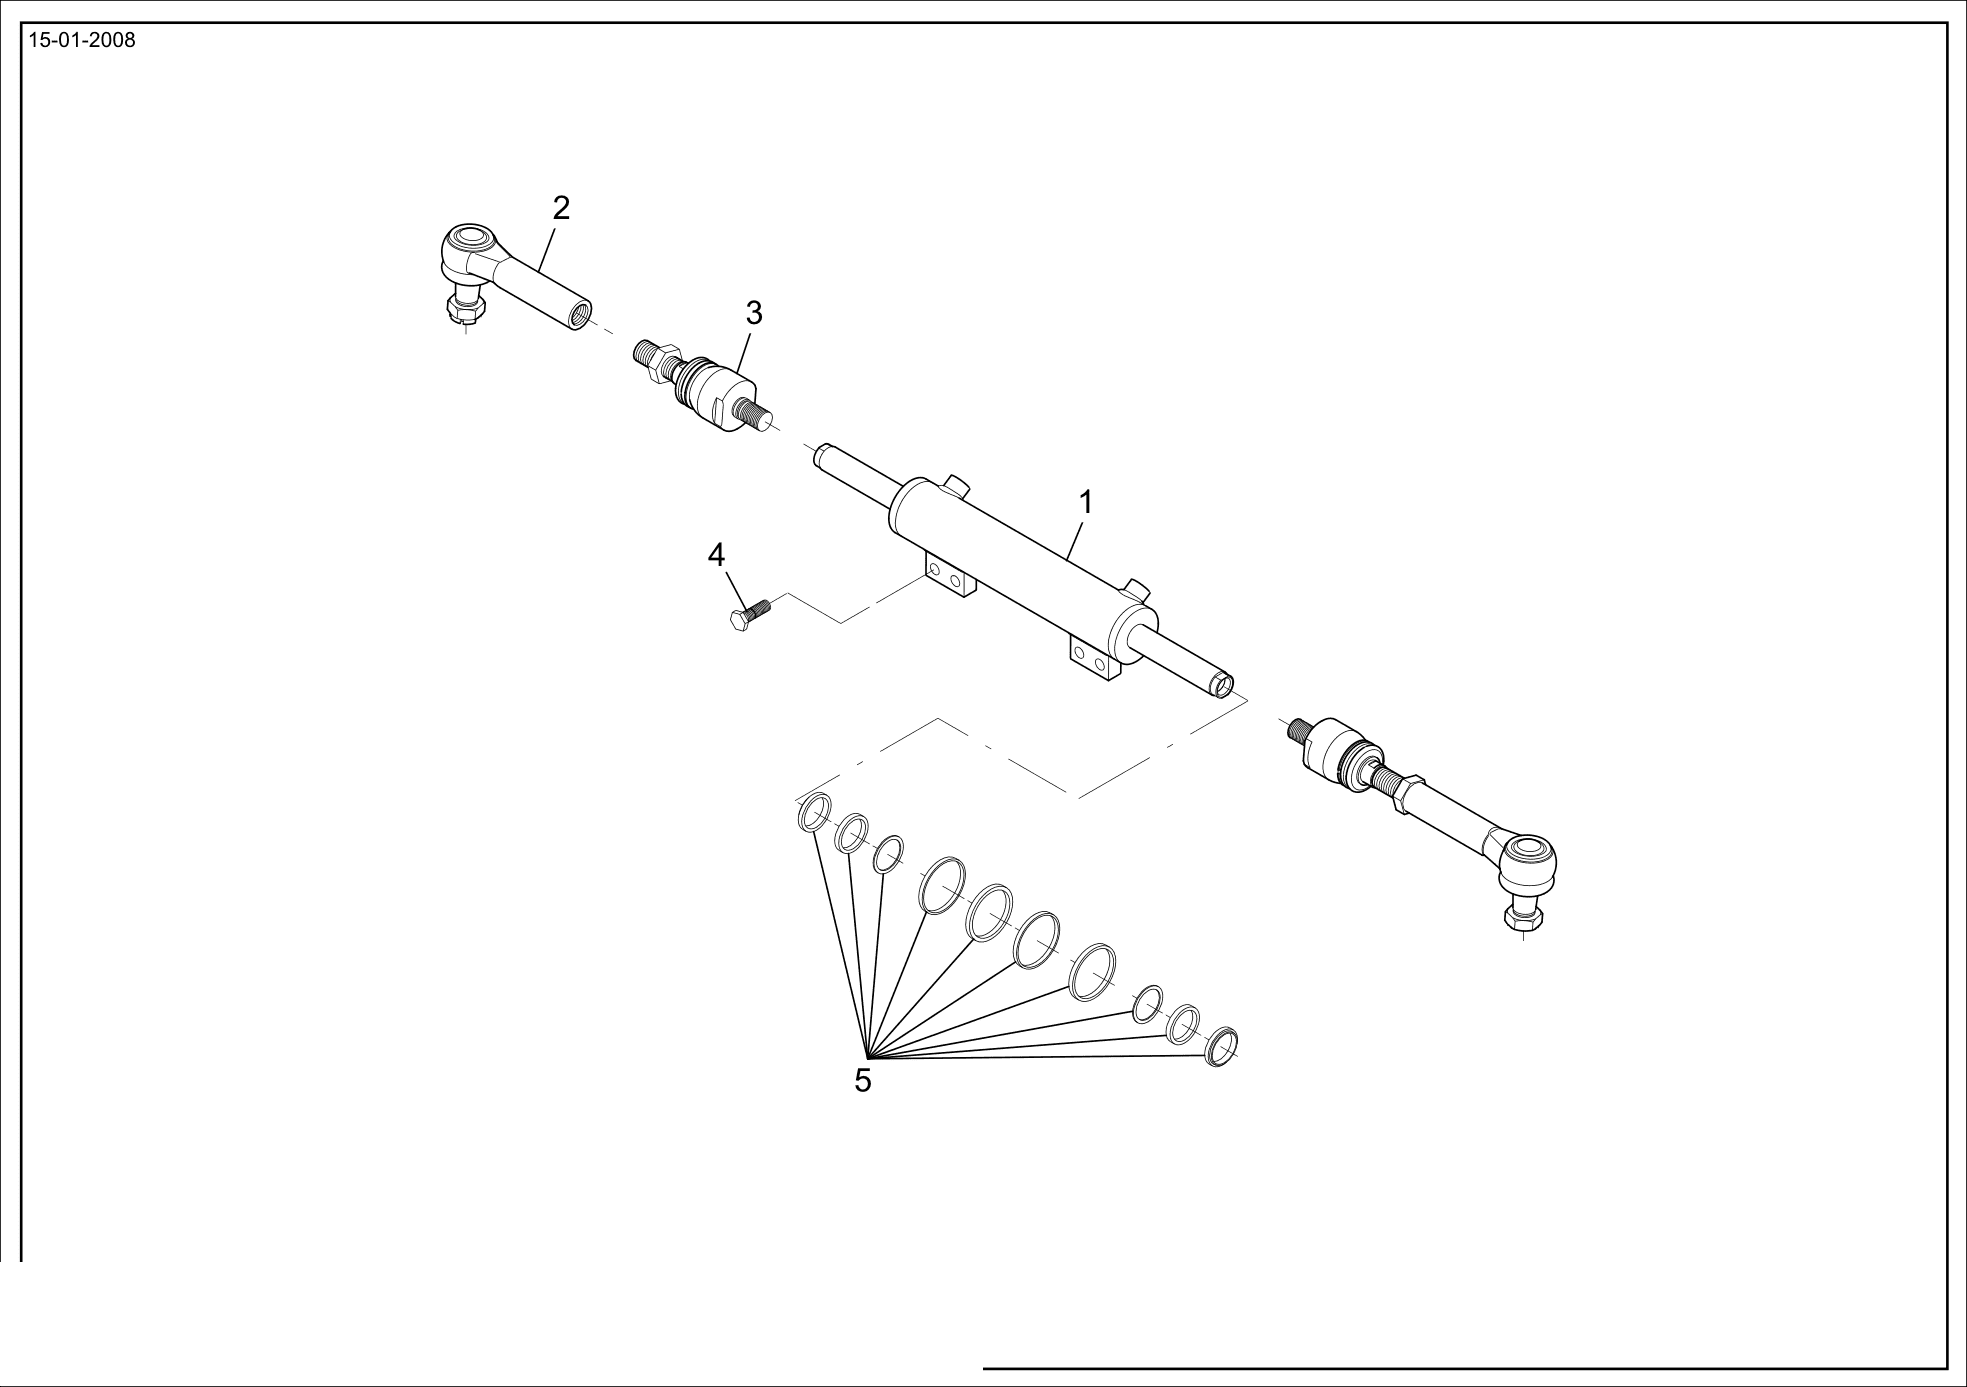 drawing for ROTA 3033850 - BAR (figure 1)